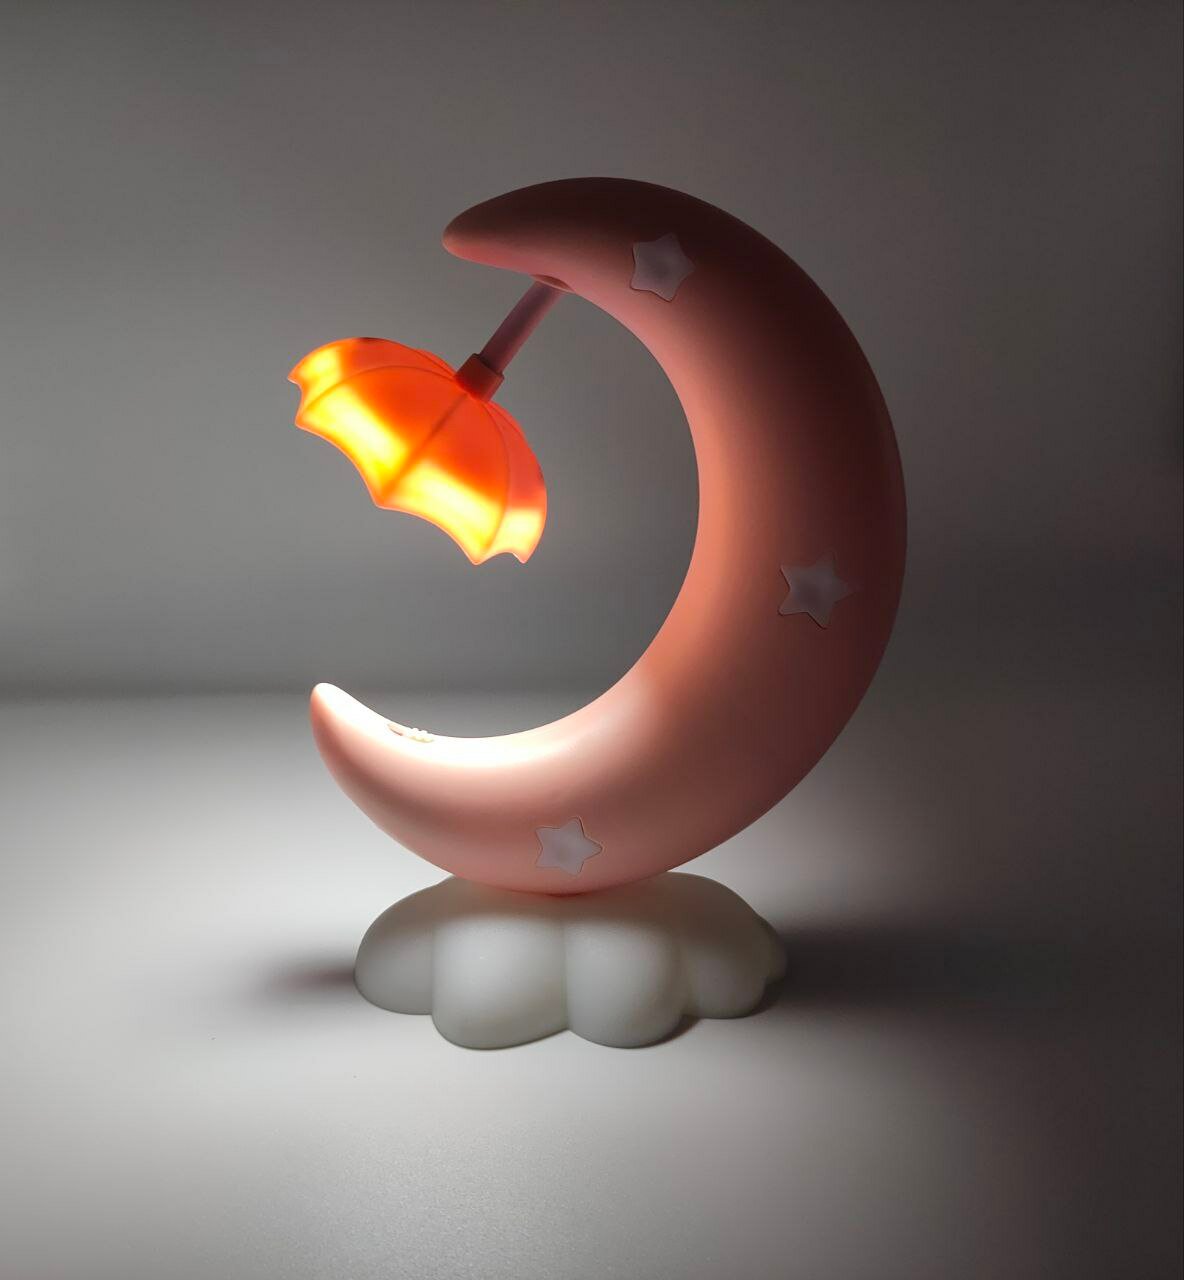 Светильник "Лунный месяц" - ночник для детской комнаты